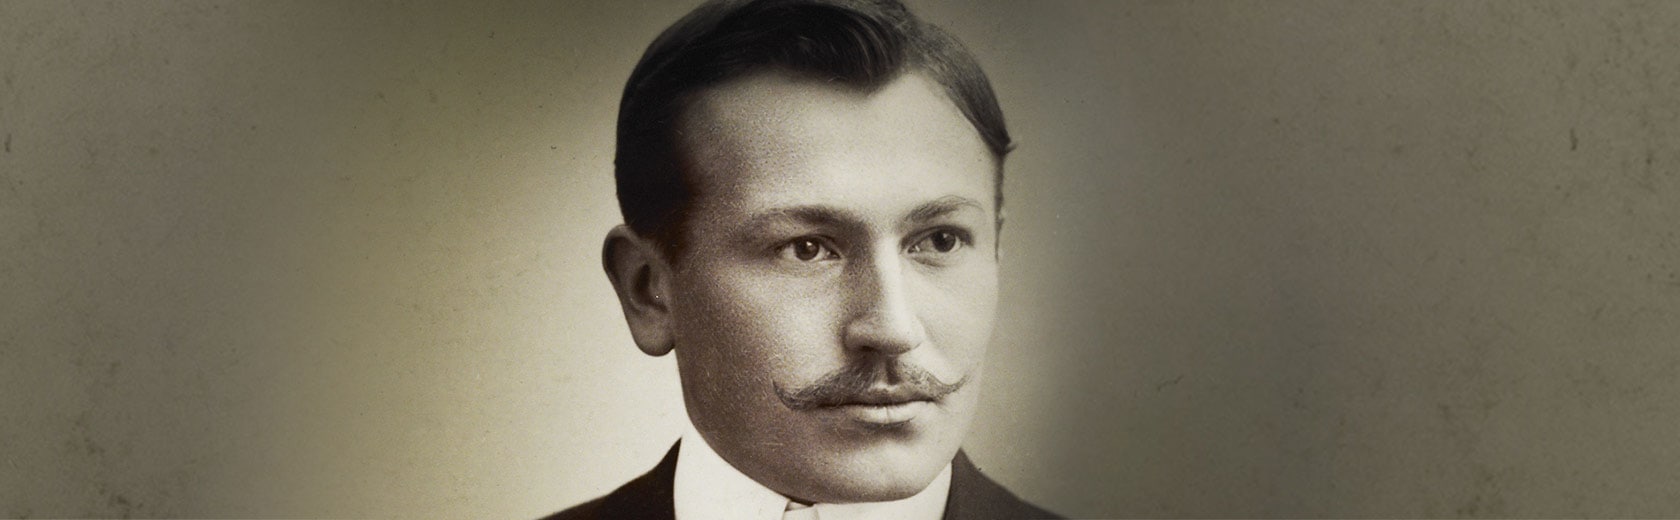 Hans Wilsdorf, the founder of Rolex.